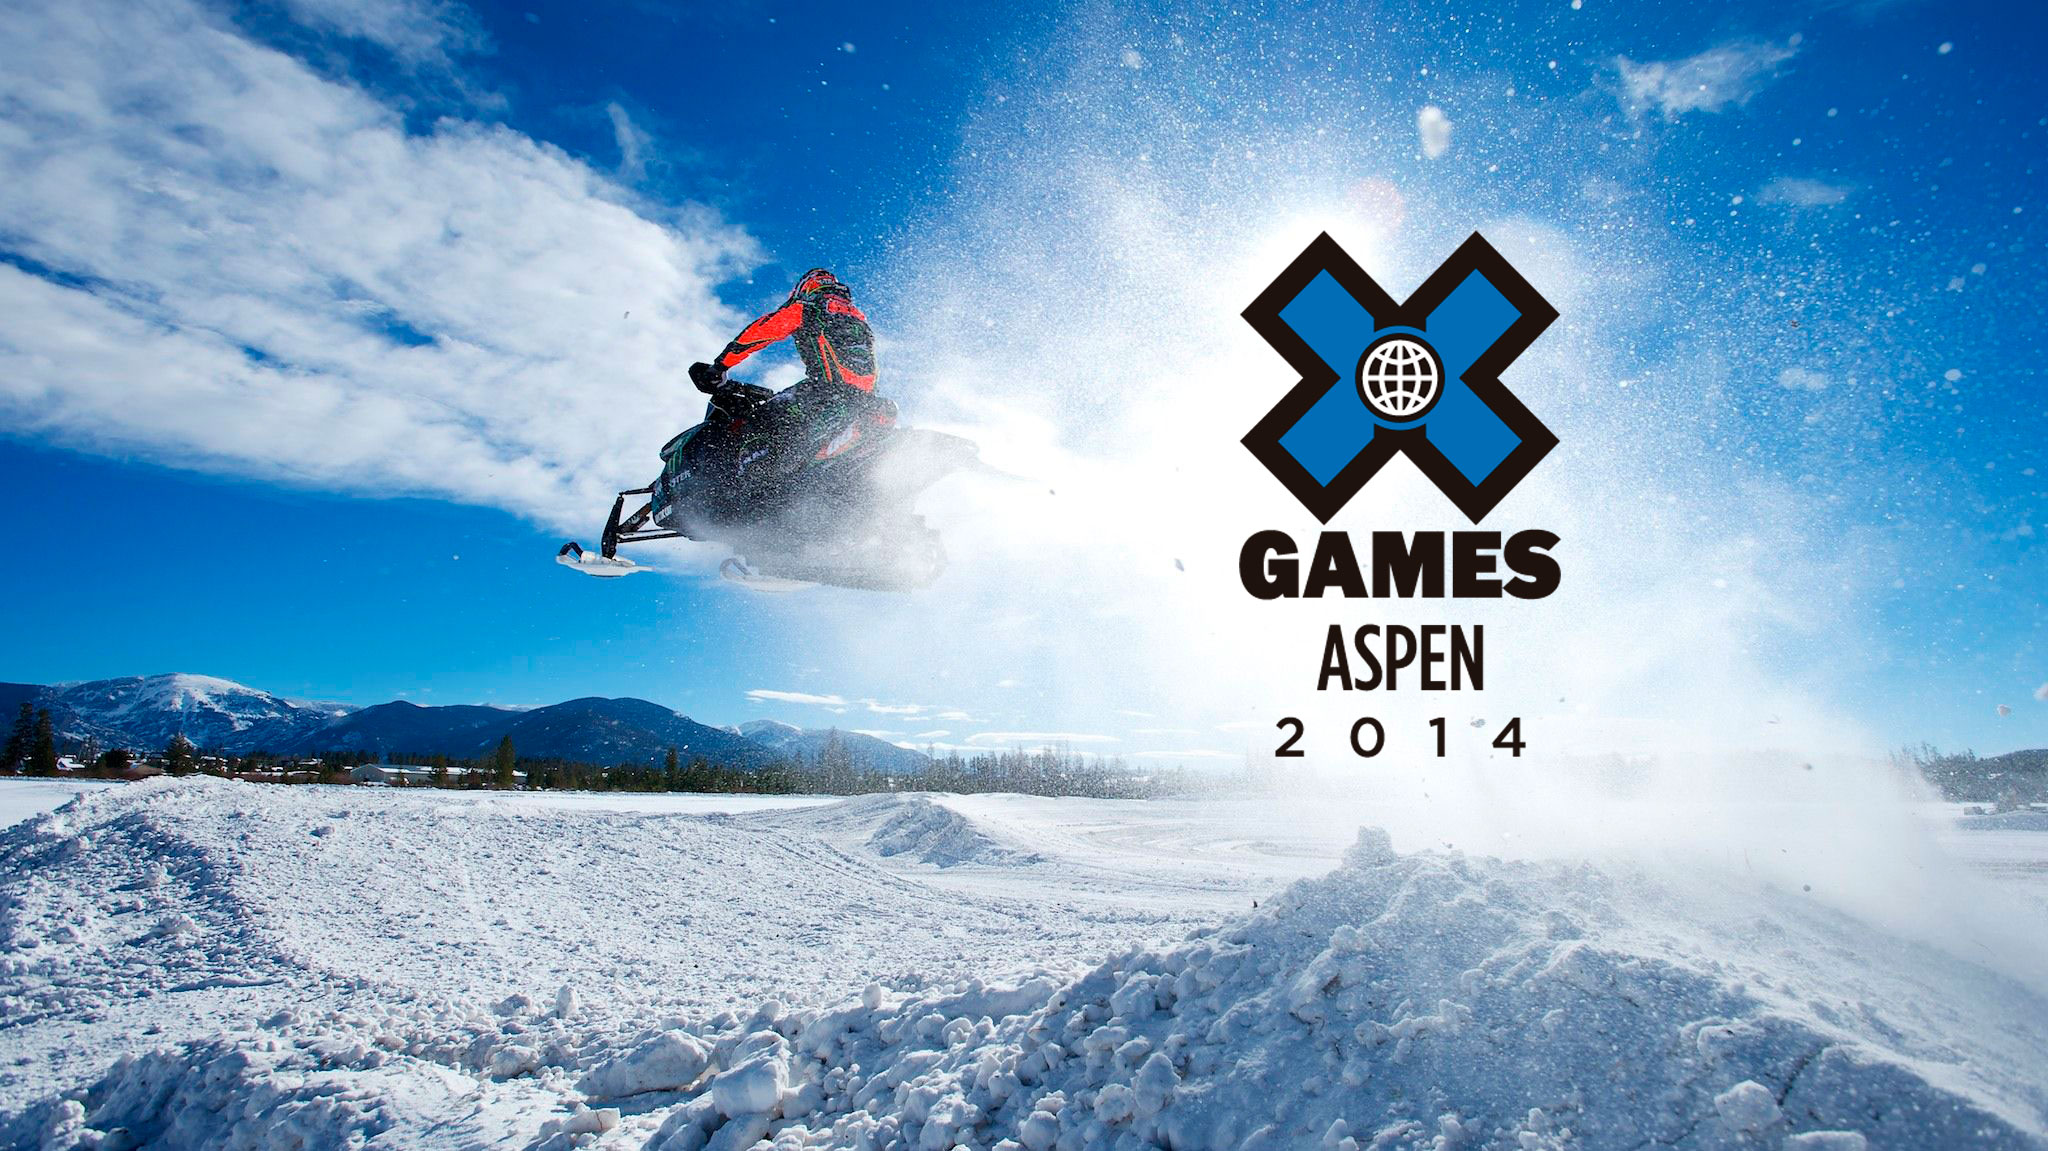 X Games ASPEN 2014 Veja a programação completa nos Canais ESPN